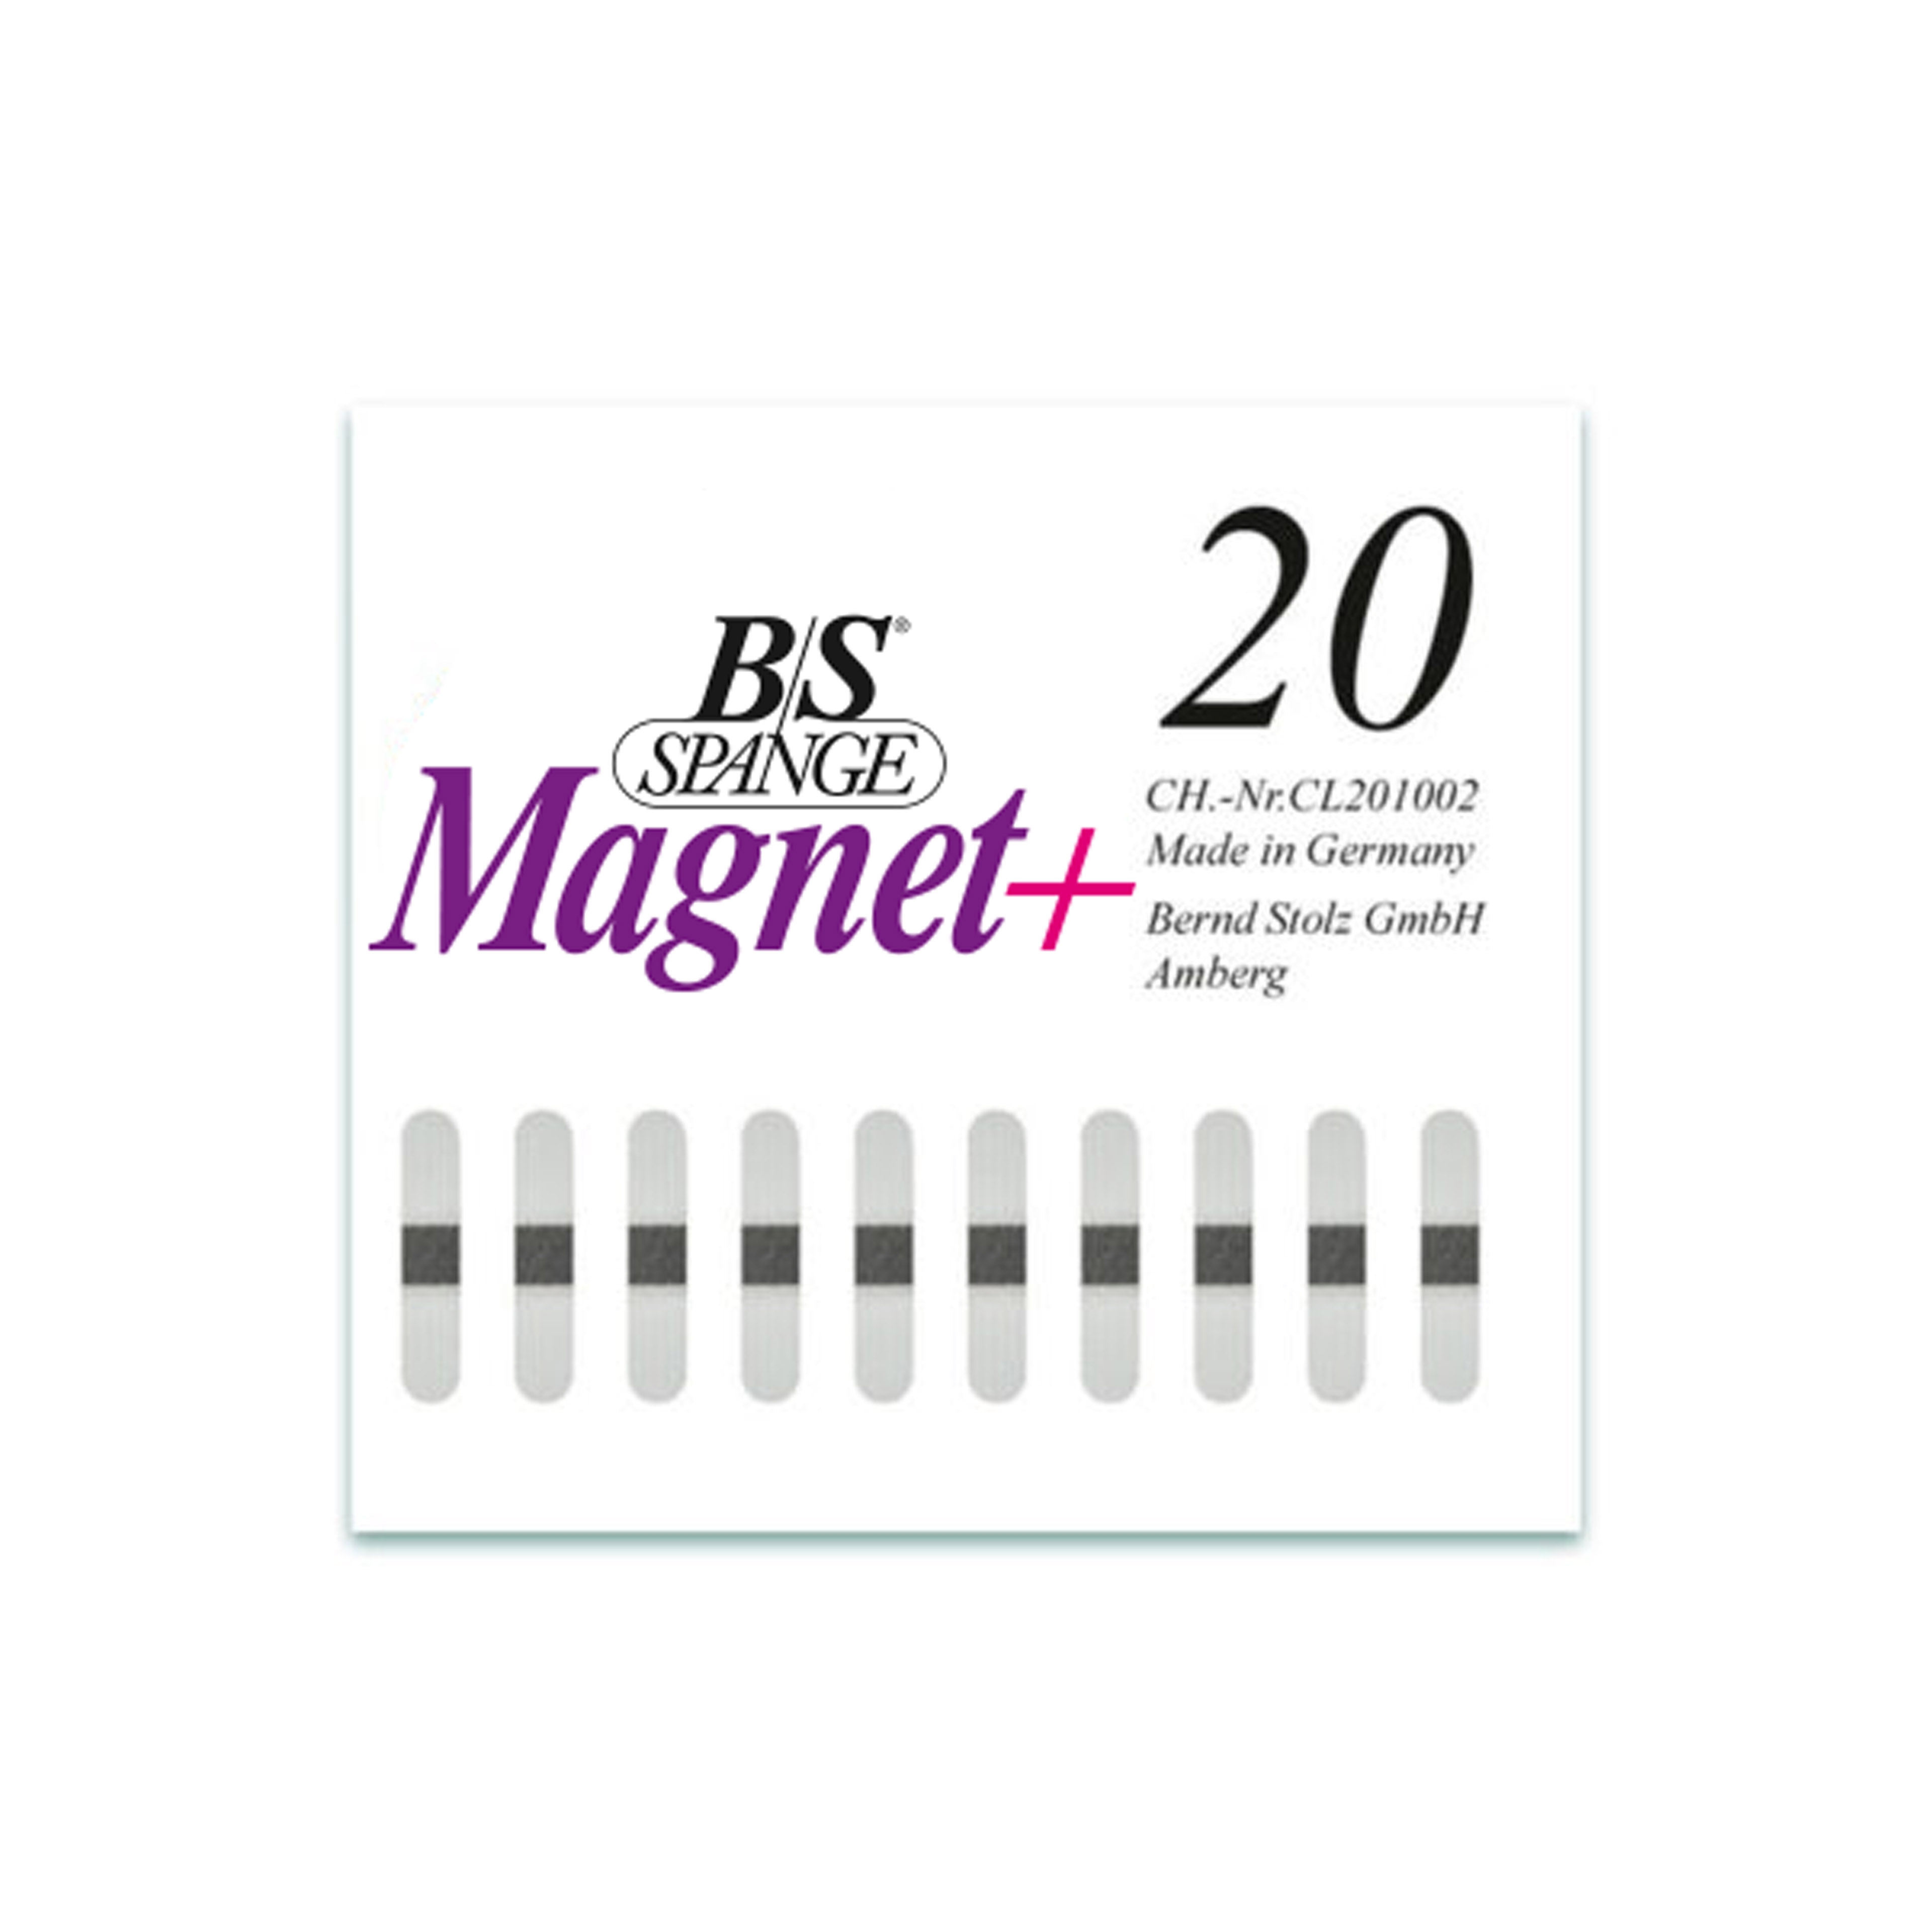 B/S Spange Magnet+ | Länge 20 Breite 4 mm 10 Stück